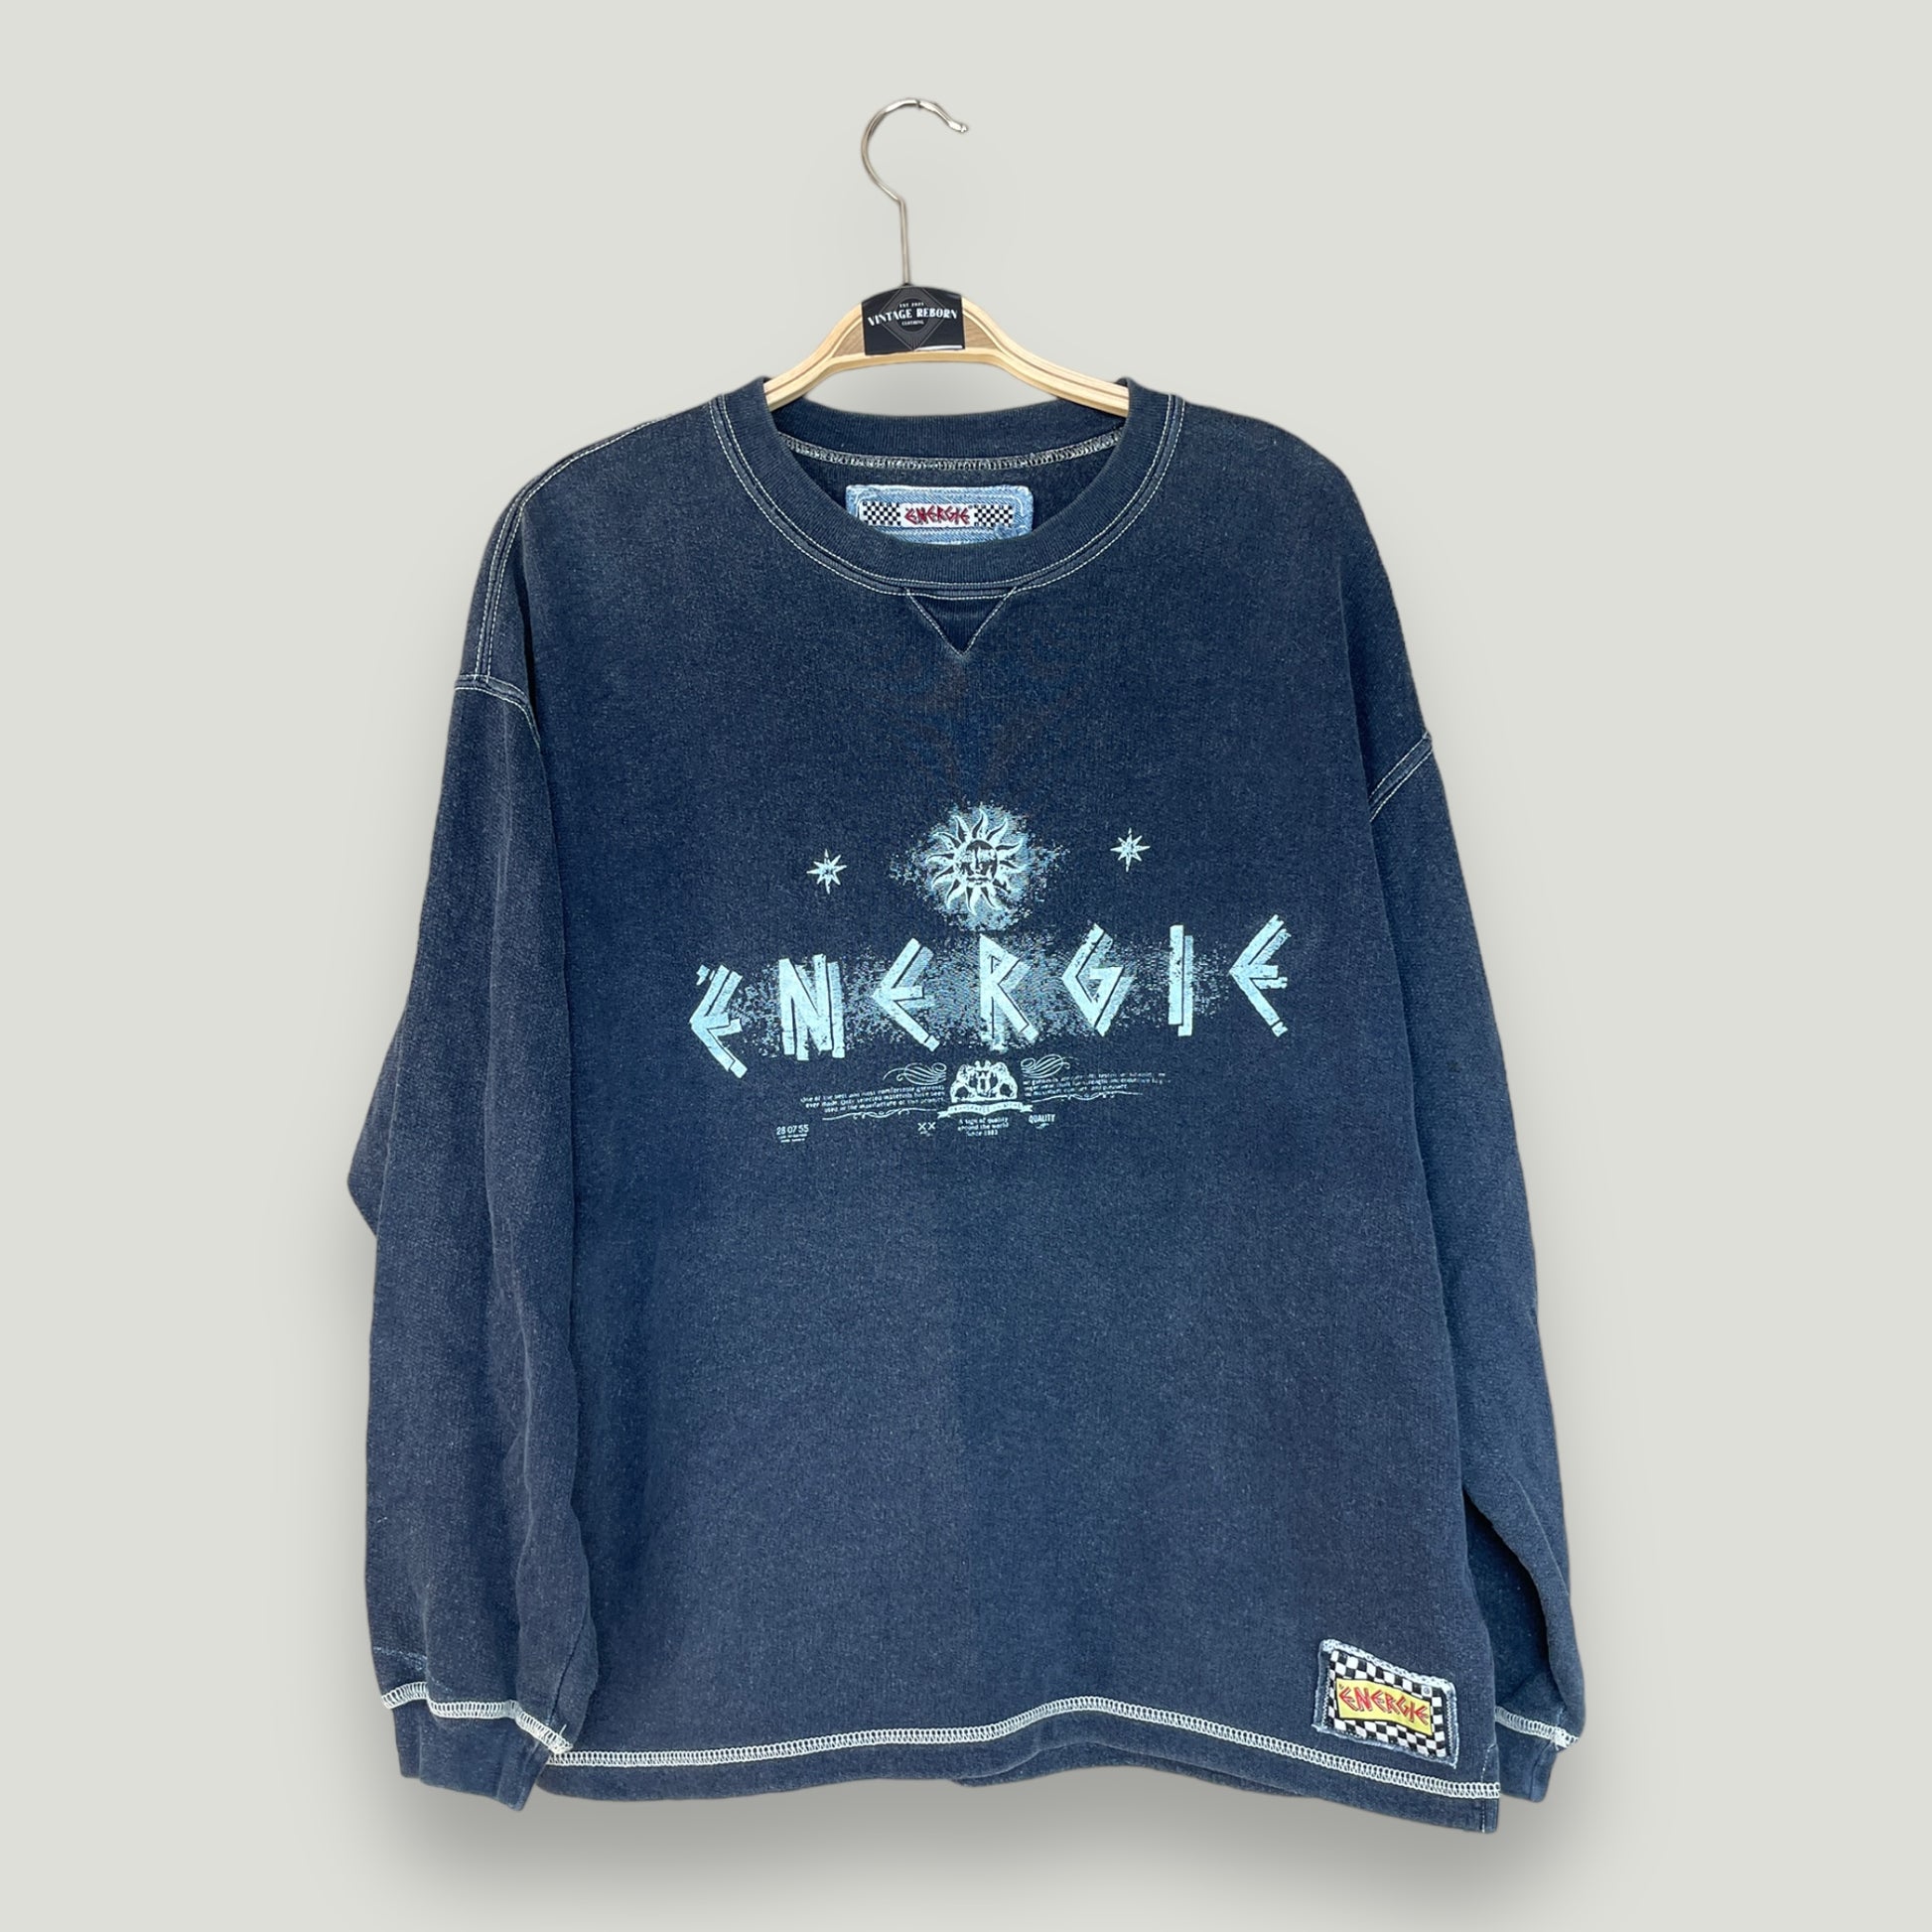 Energie Sweater - Vintage Reborn